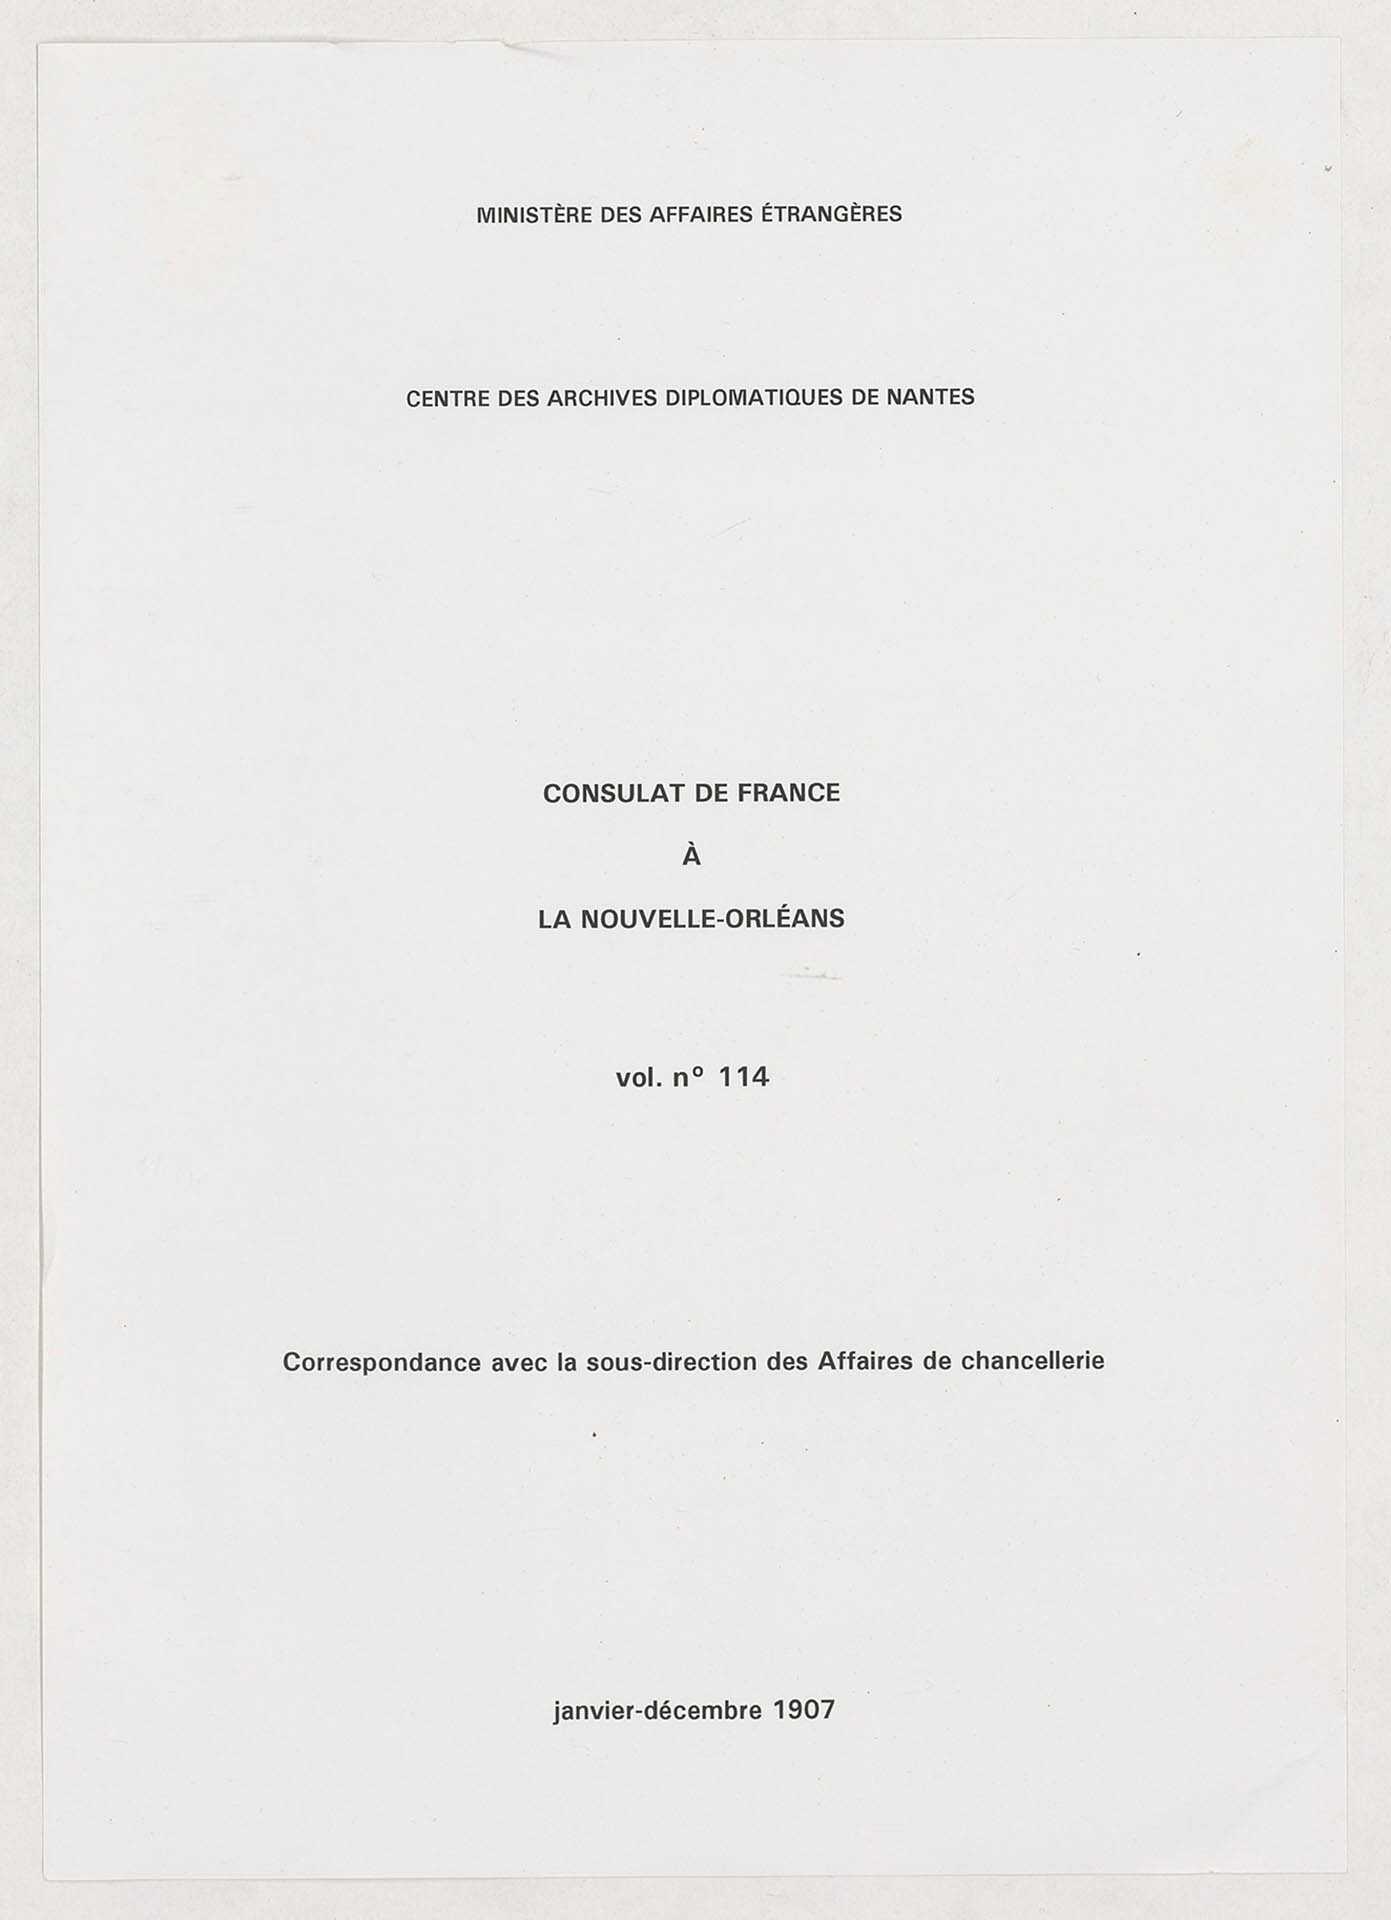 Correspondance avec la sous-direction des Affaires de chancellerie (janvier-décembre 1907).